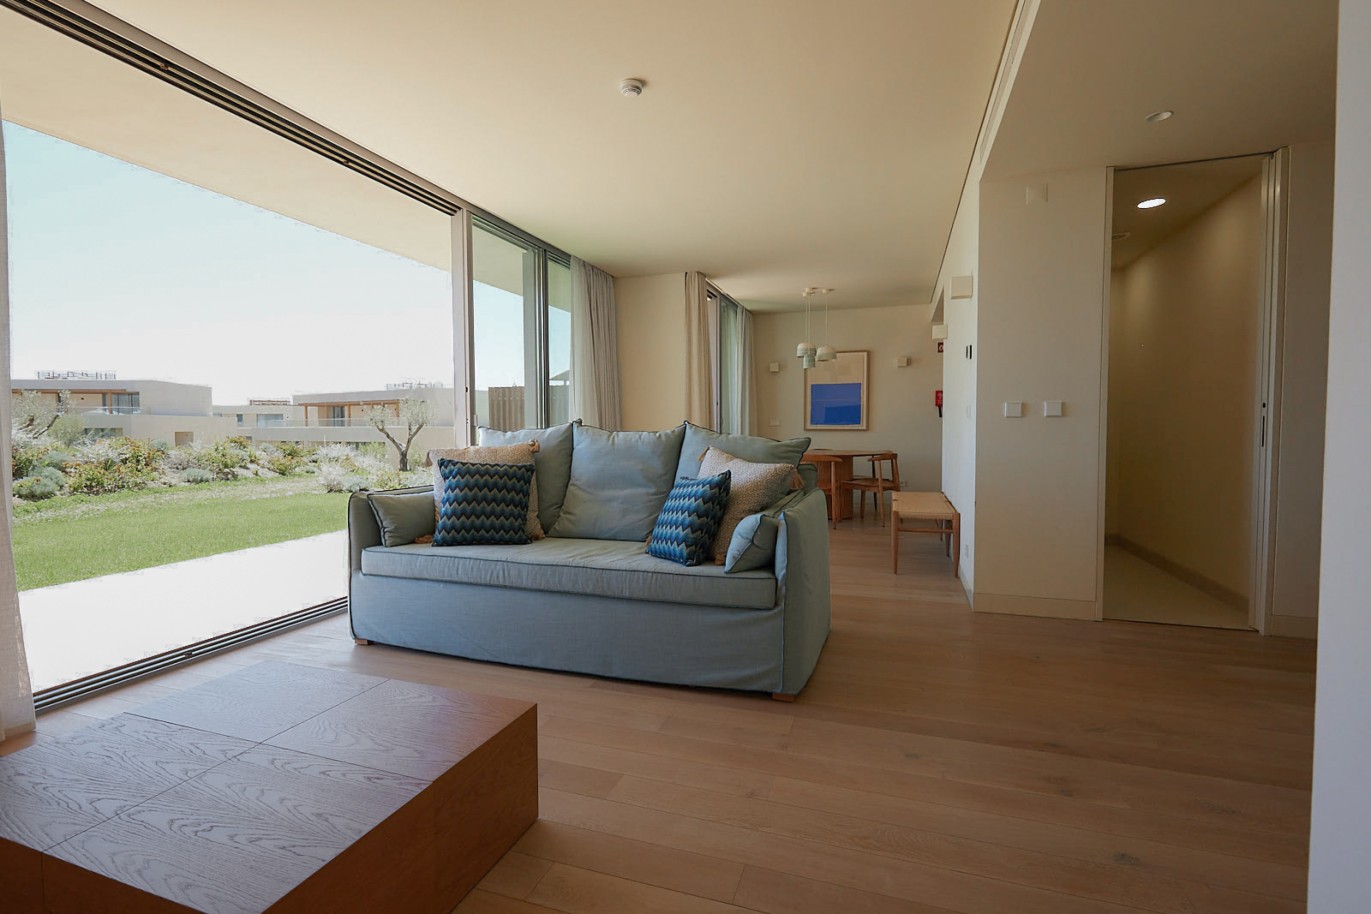 3 bedroom flat in resort, for sale in Porches, Algarve_230732